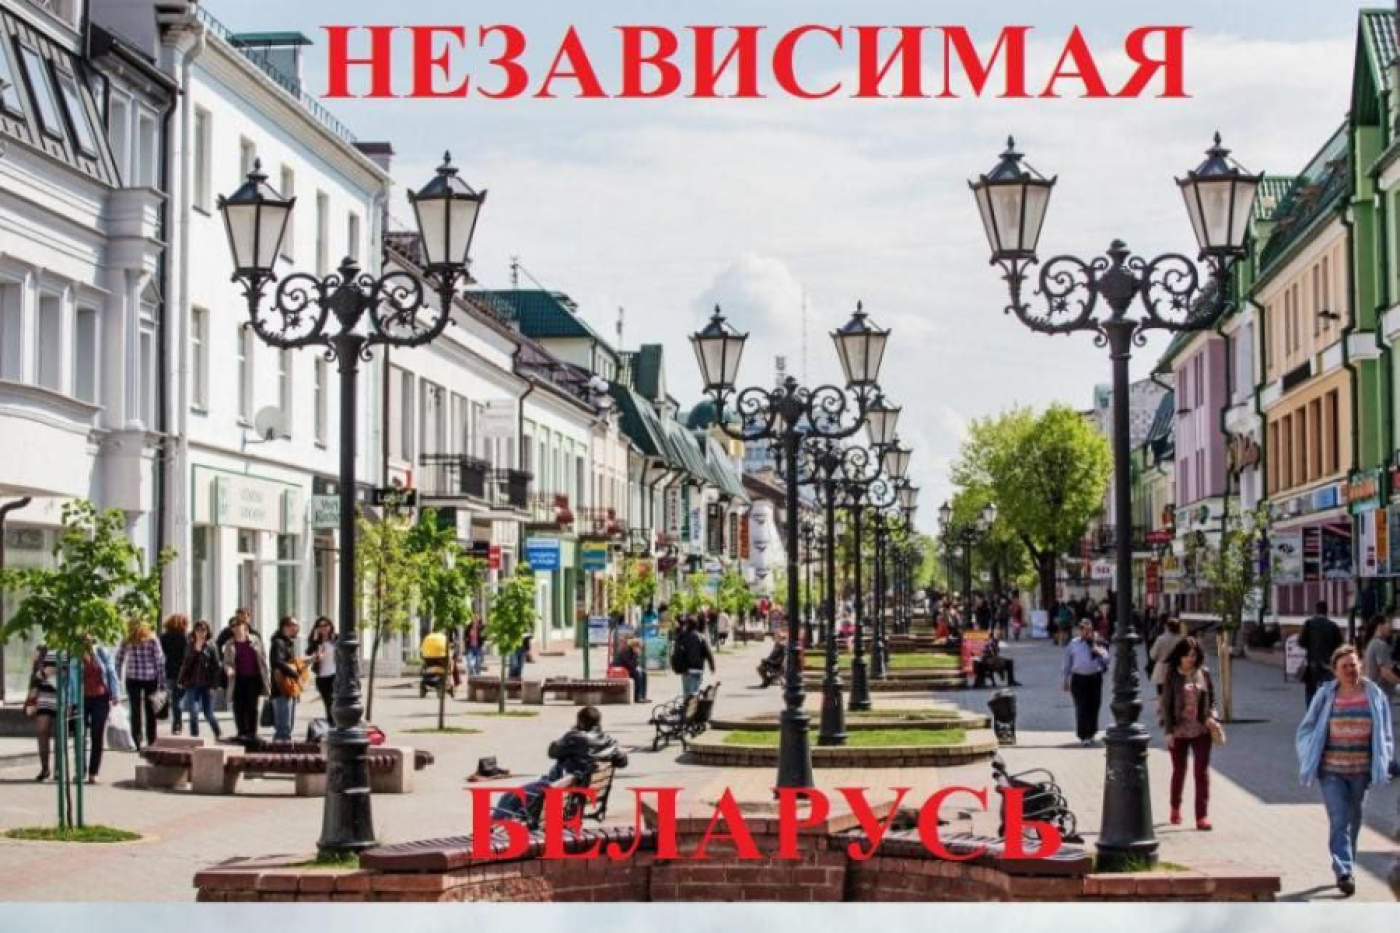 3 июля в Беларуси празднуют День Независимости.